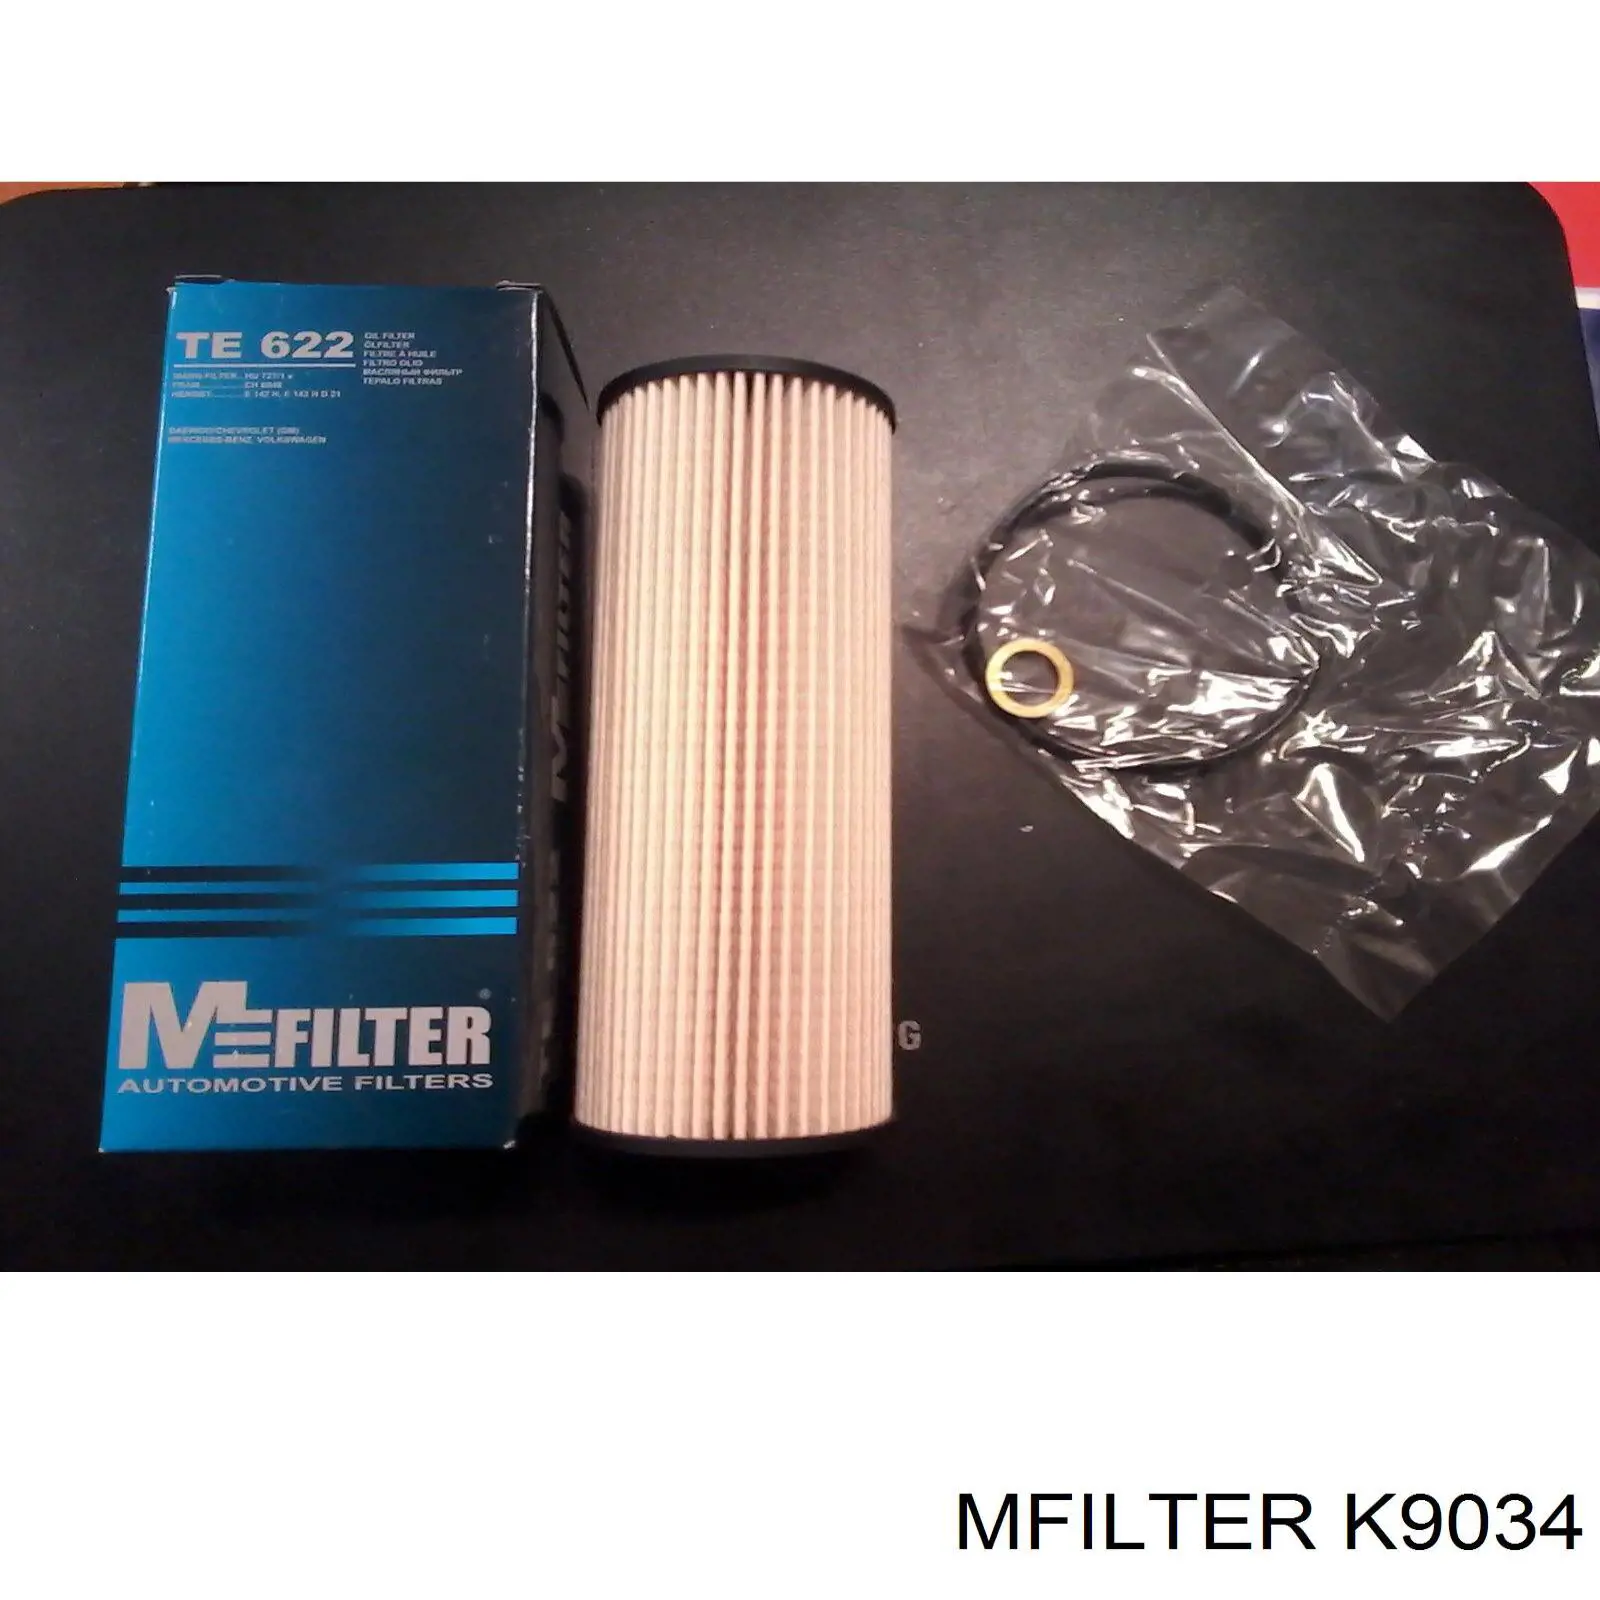 K9034 Mfilter filtro habitáculo